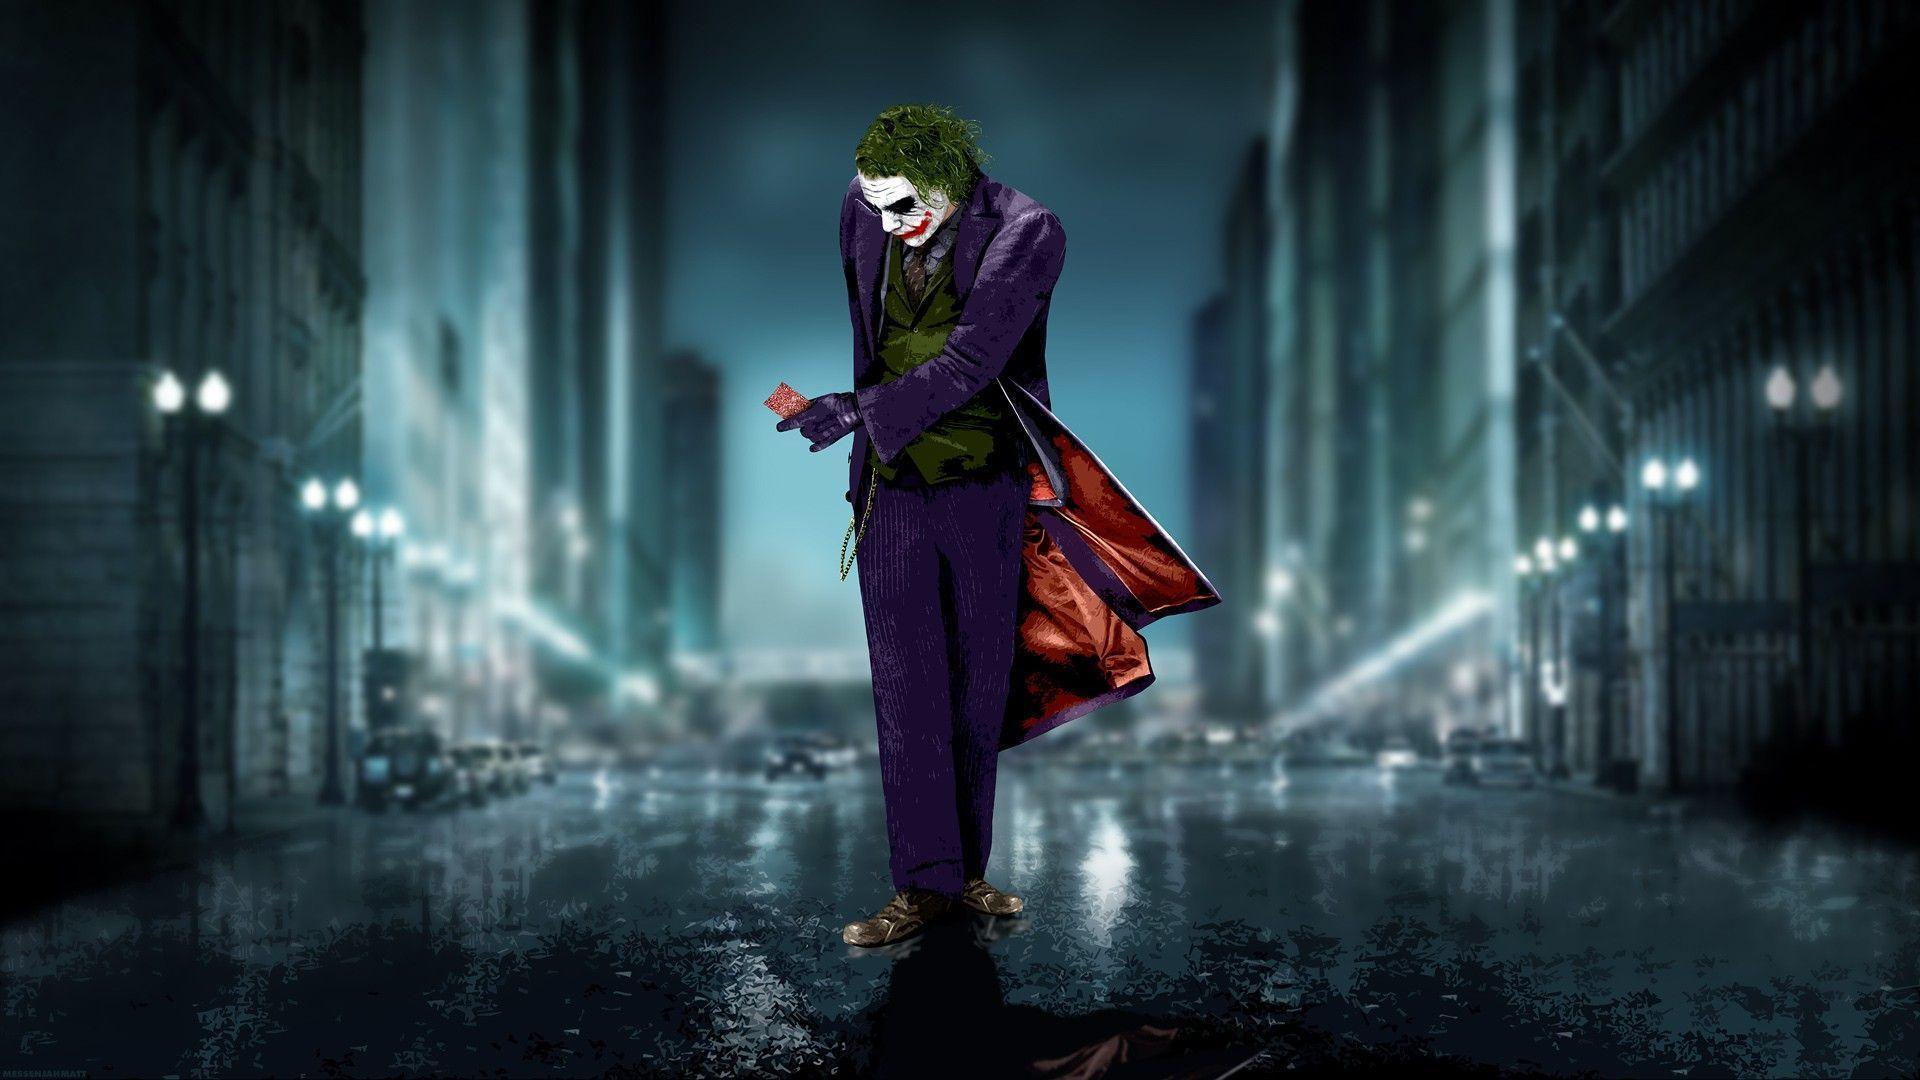 Wallpaper For Pc Of Joker